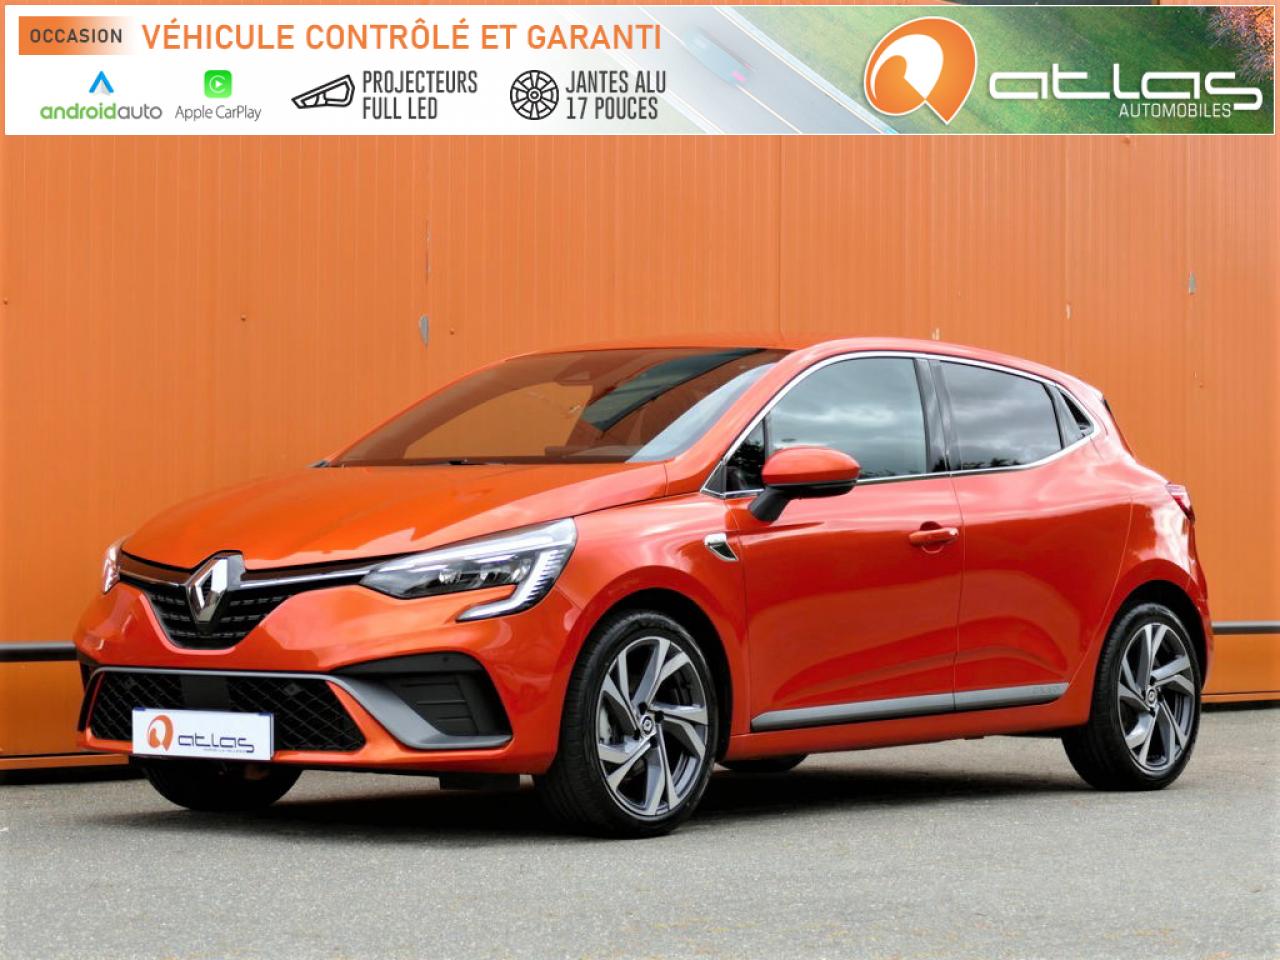 2021 Renault CLIO